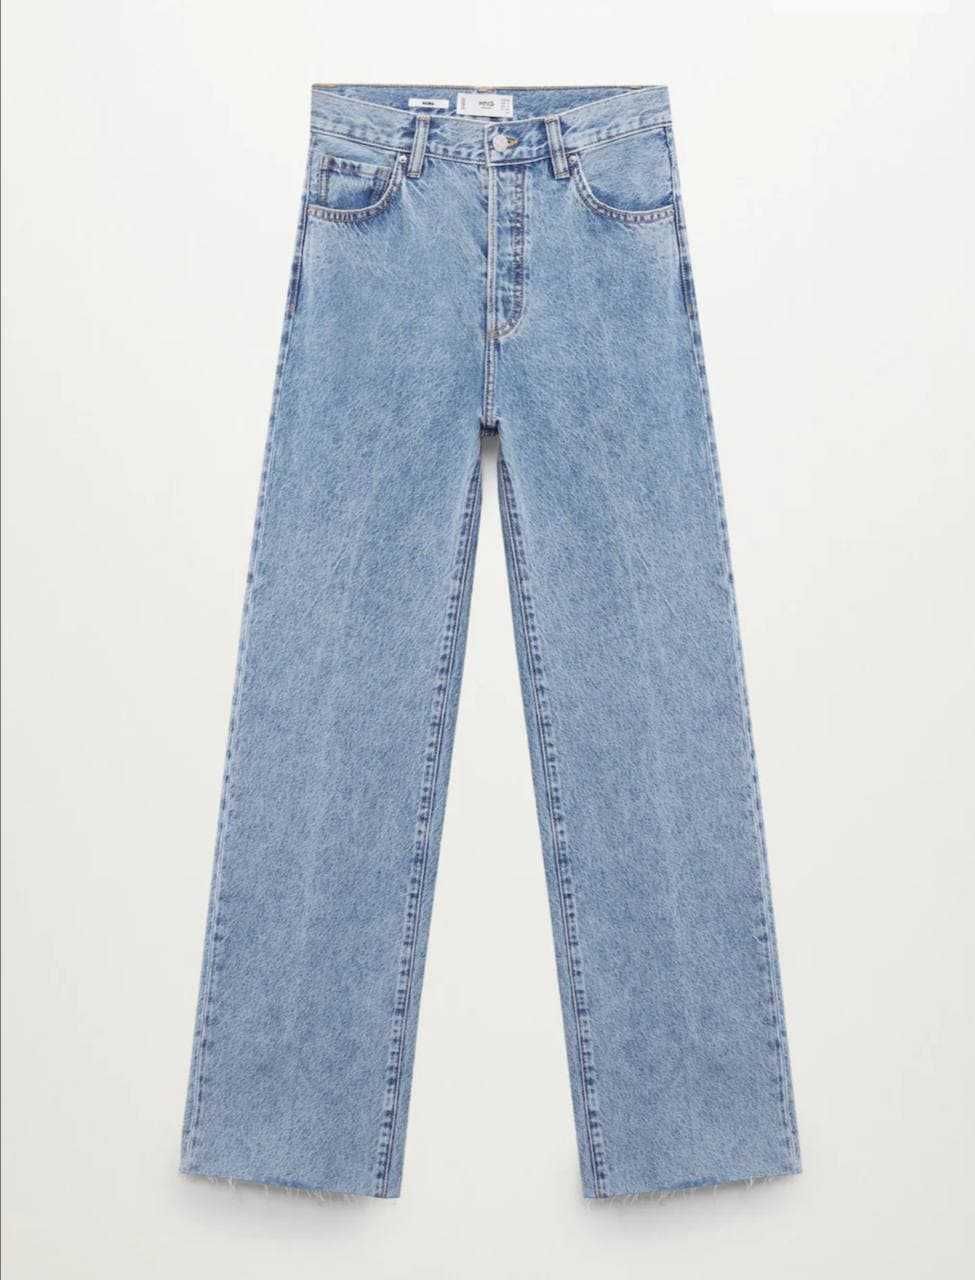 Продаются джинсы новые от бренда Mango.